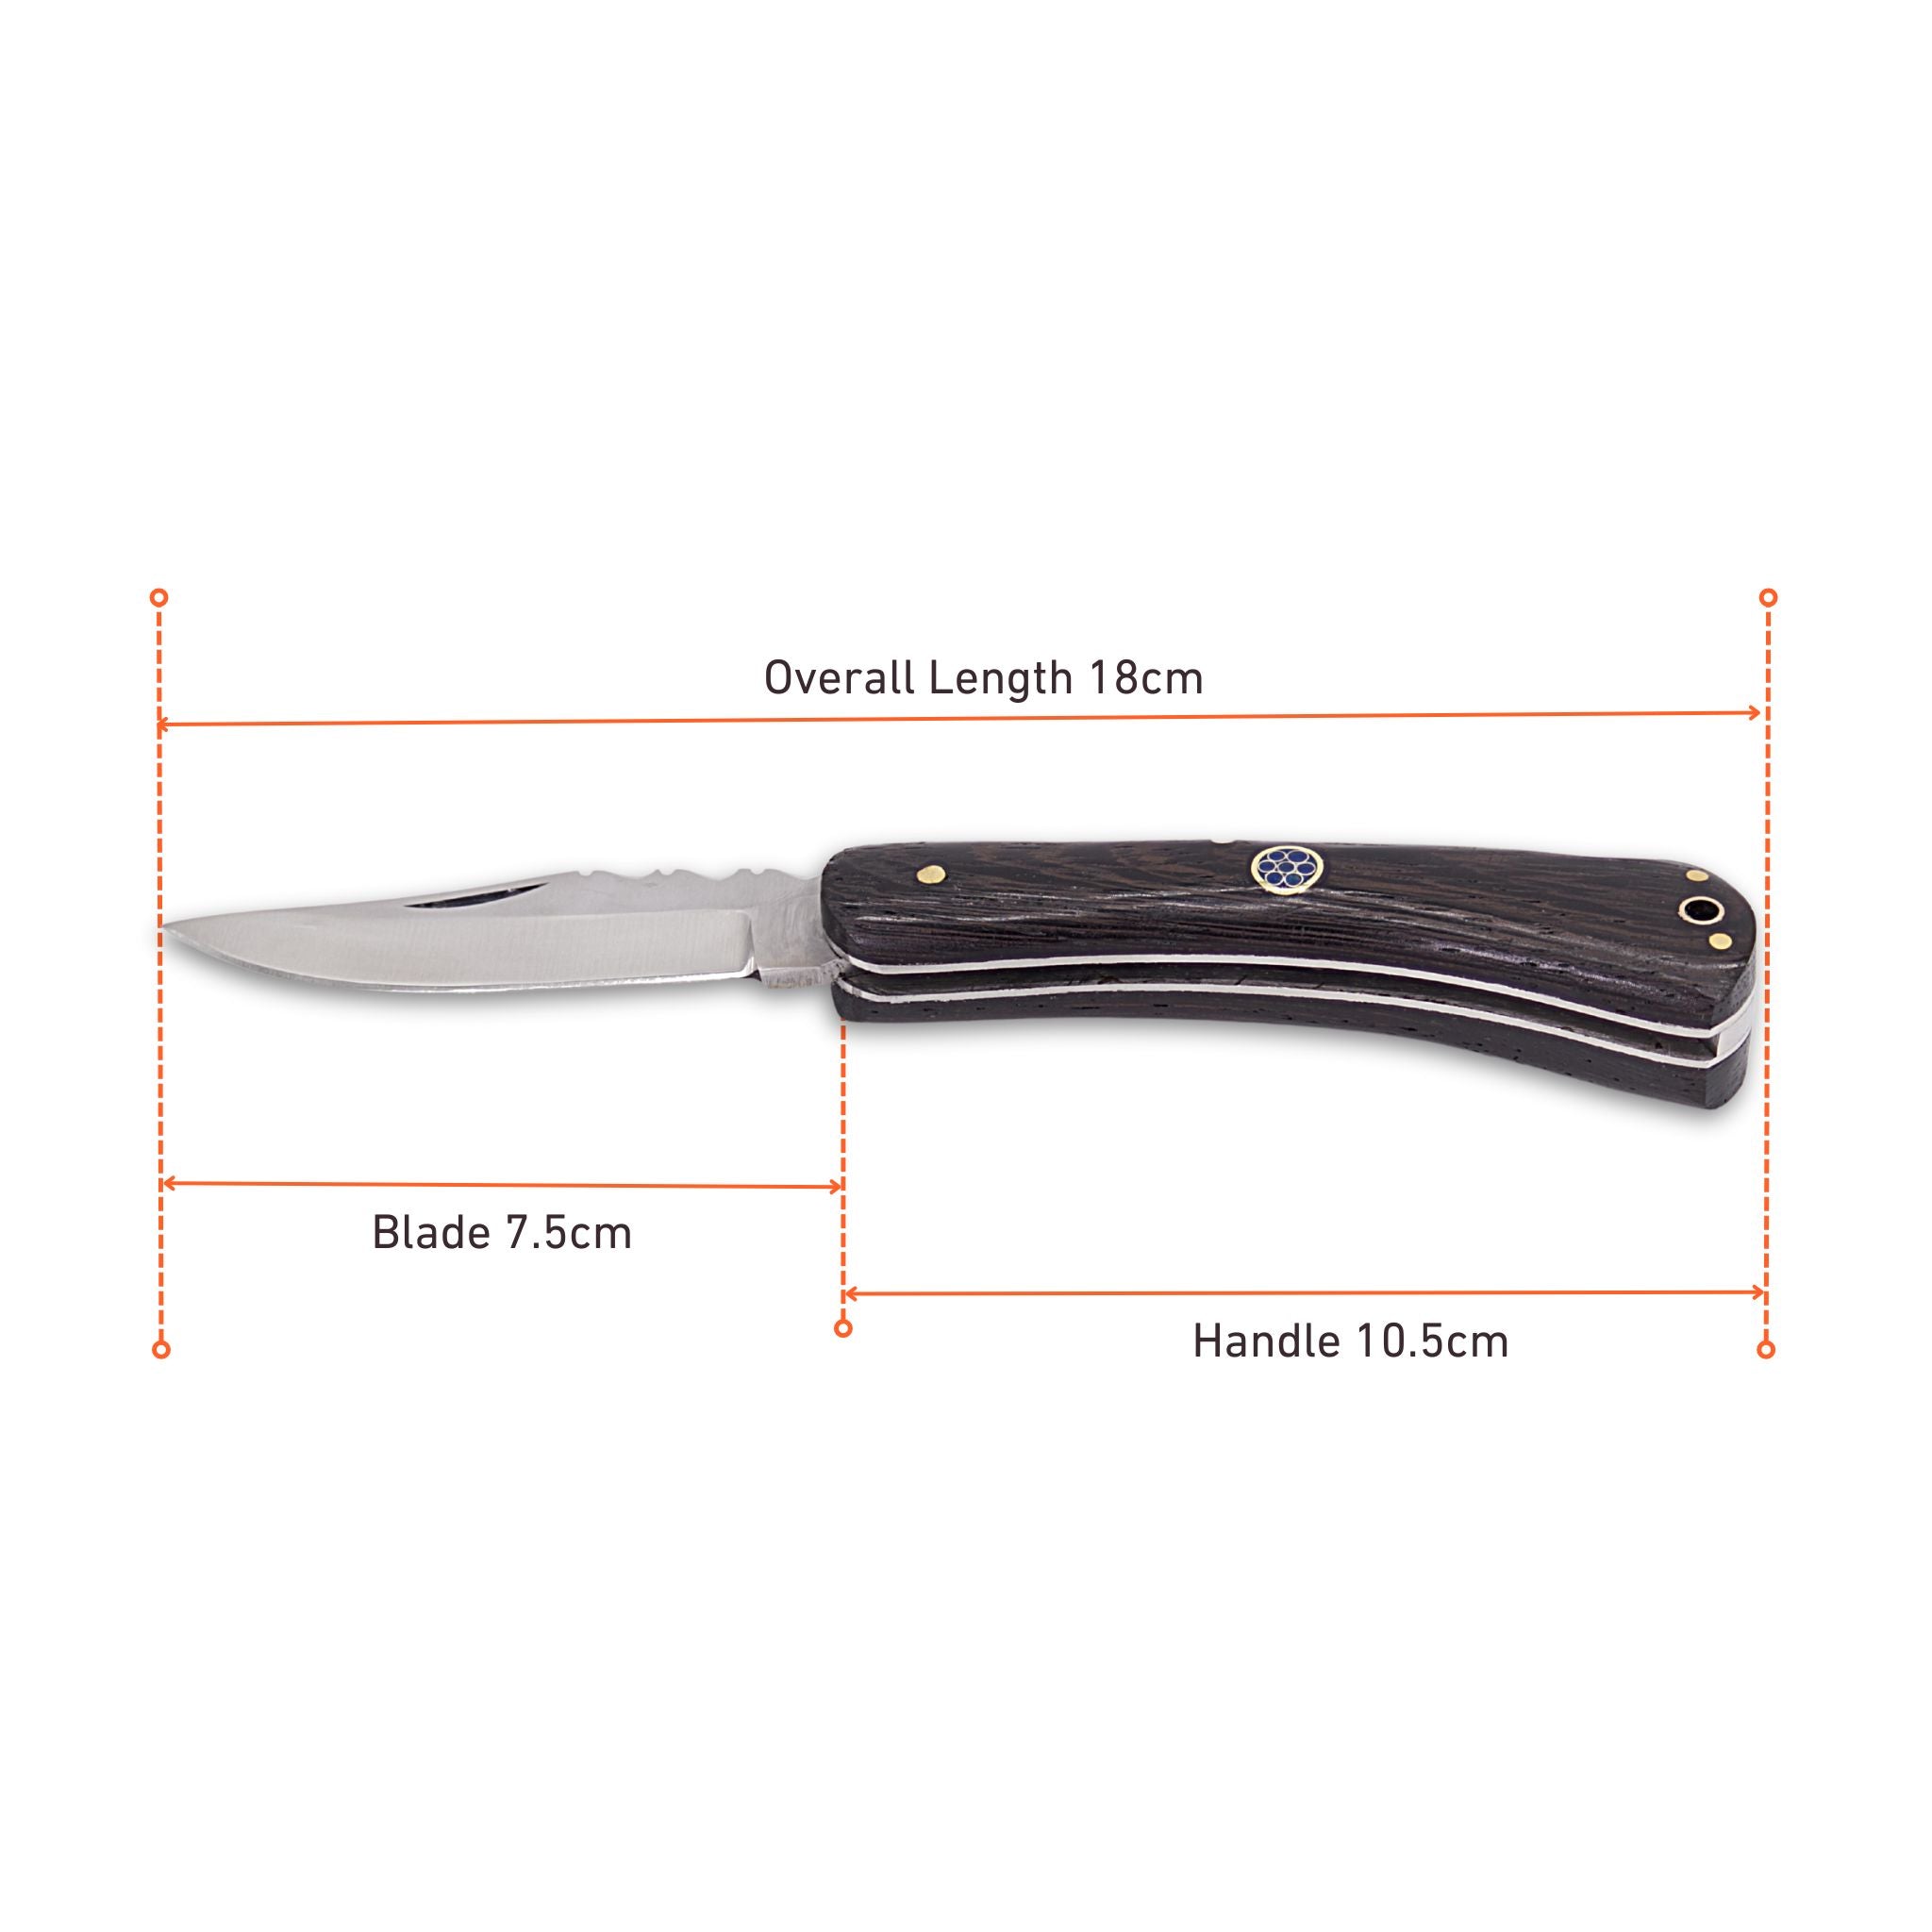 Gest Hawk II, Handmade Folding Knife, Stainless Steel Pocket Knife